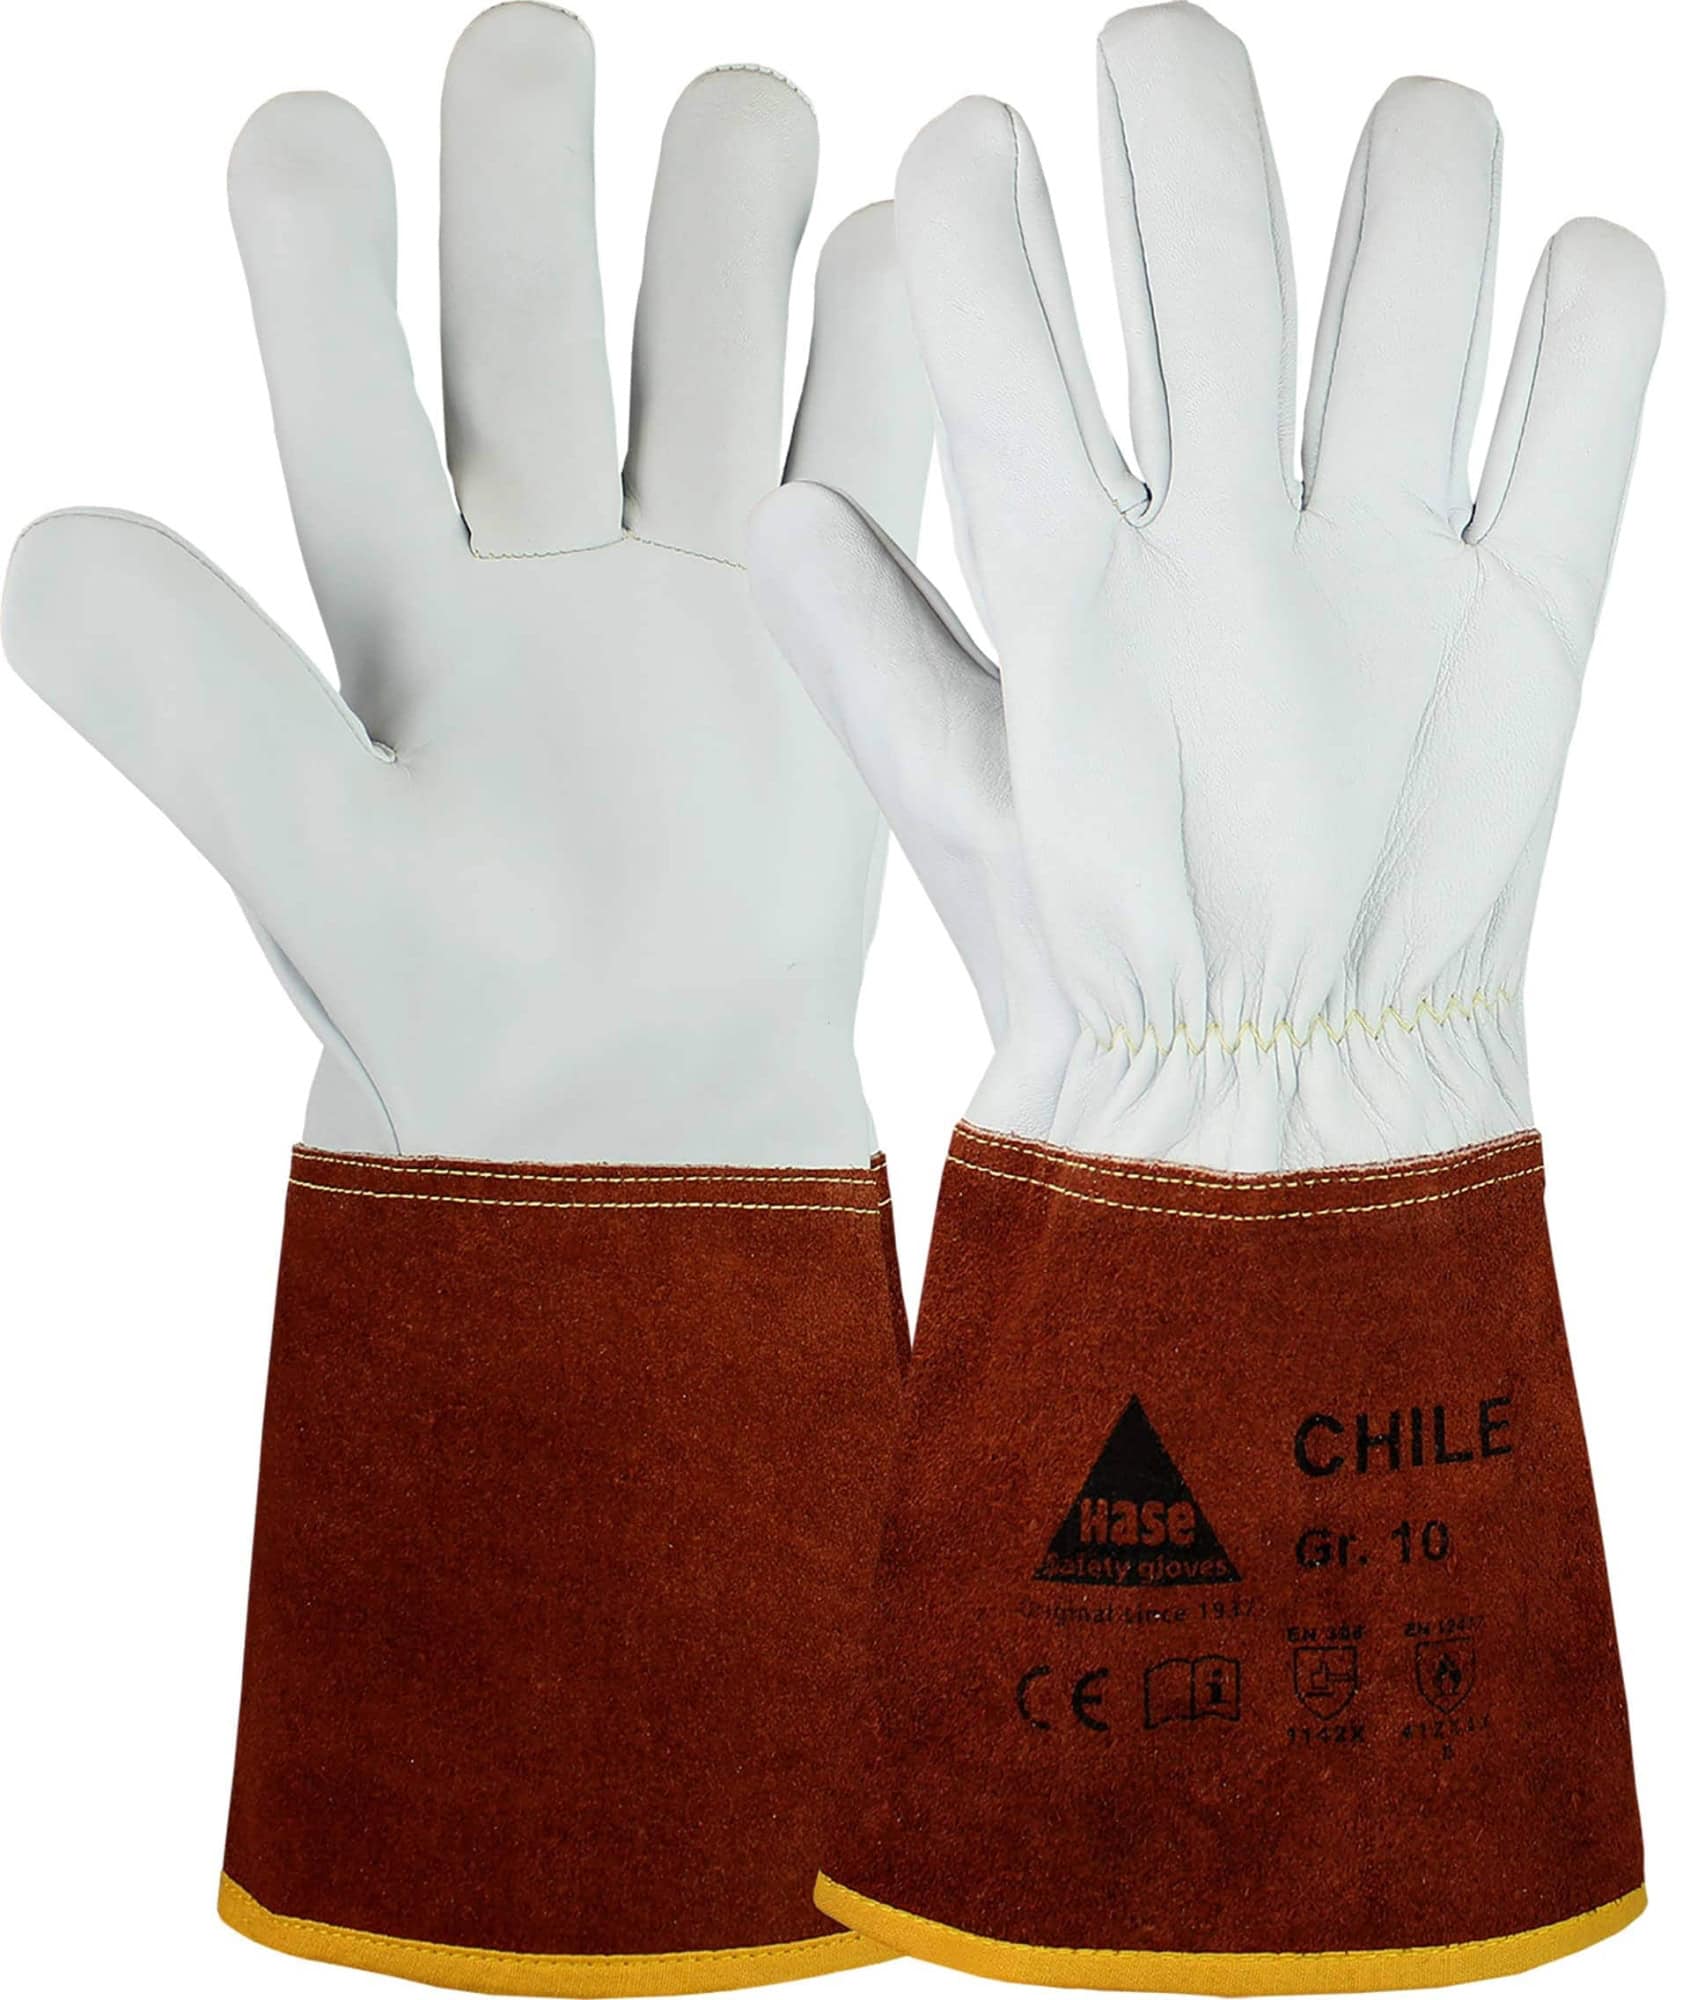 Hase Safety Gloves® CHILE 403840-11, Größe 11, Typ B, Kat. II, Natur/Dunkelbraun, Schweißerhandschuh für leichte Schweißarbeiten